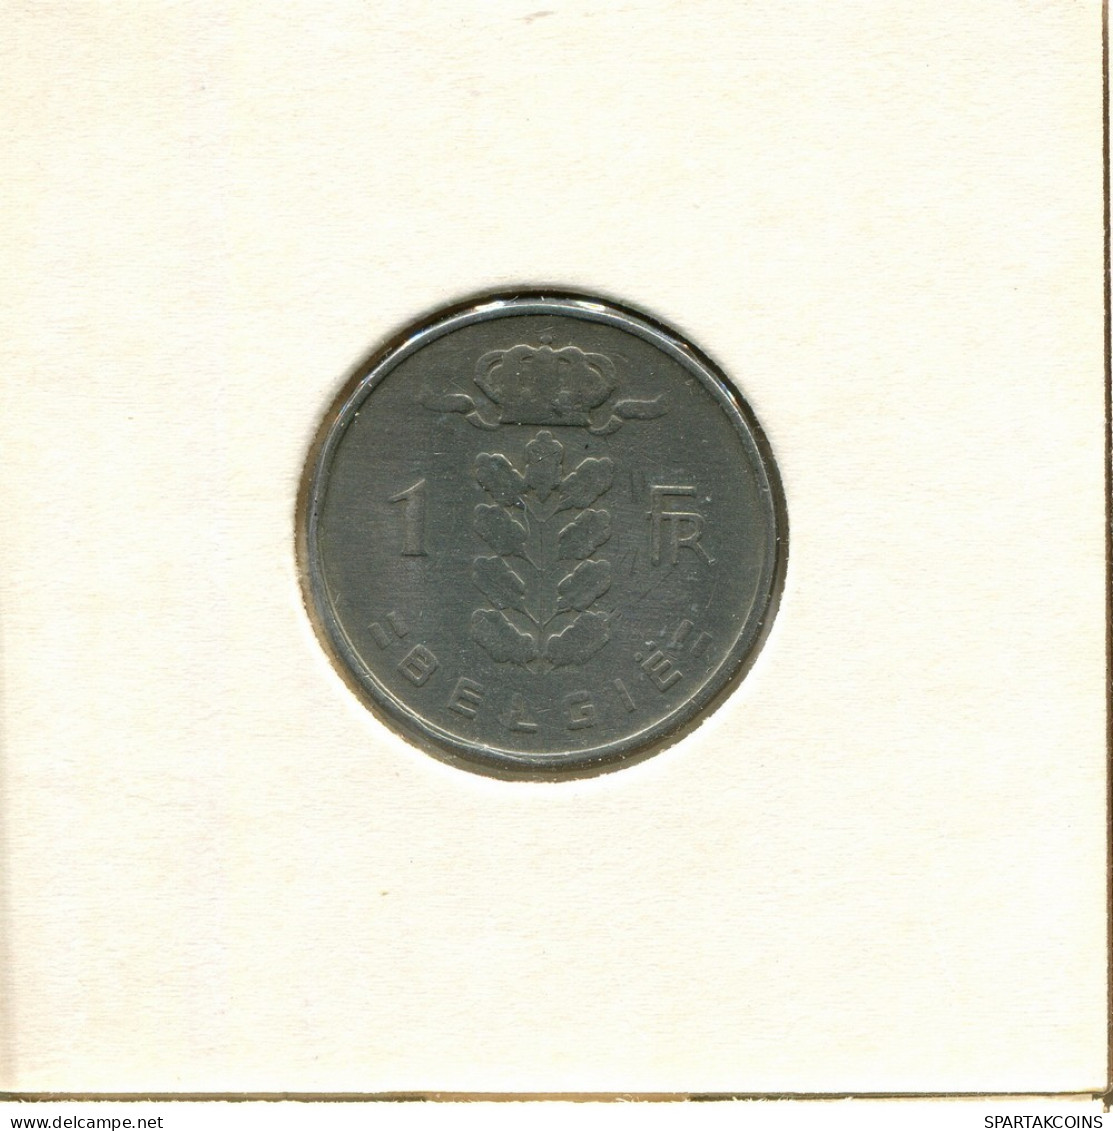 1 FRANC 1962 DUTCH Text BELGIUM Coin #BB180.U.A - 1 Franc